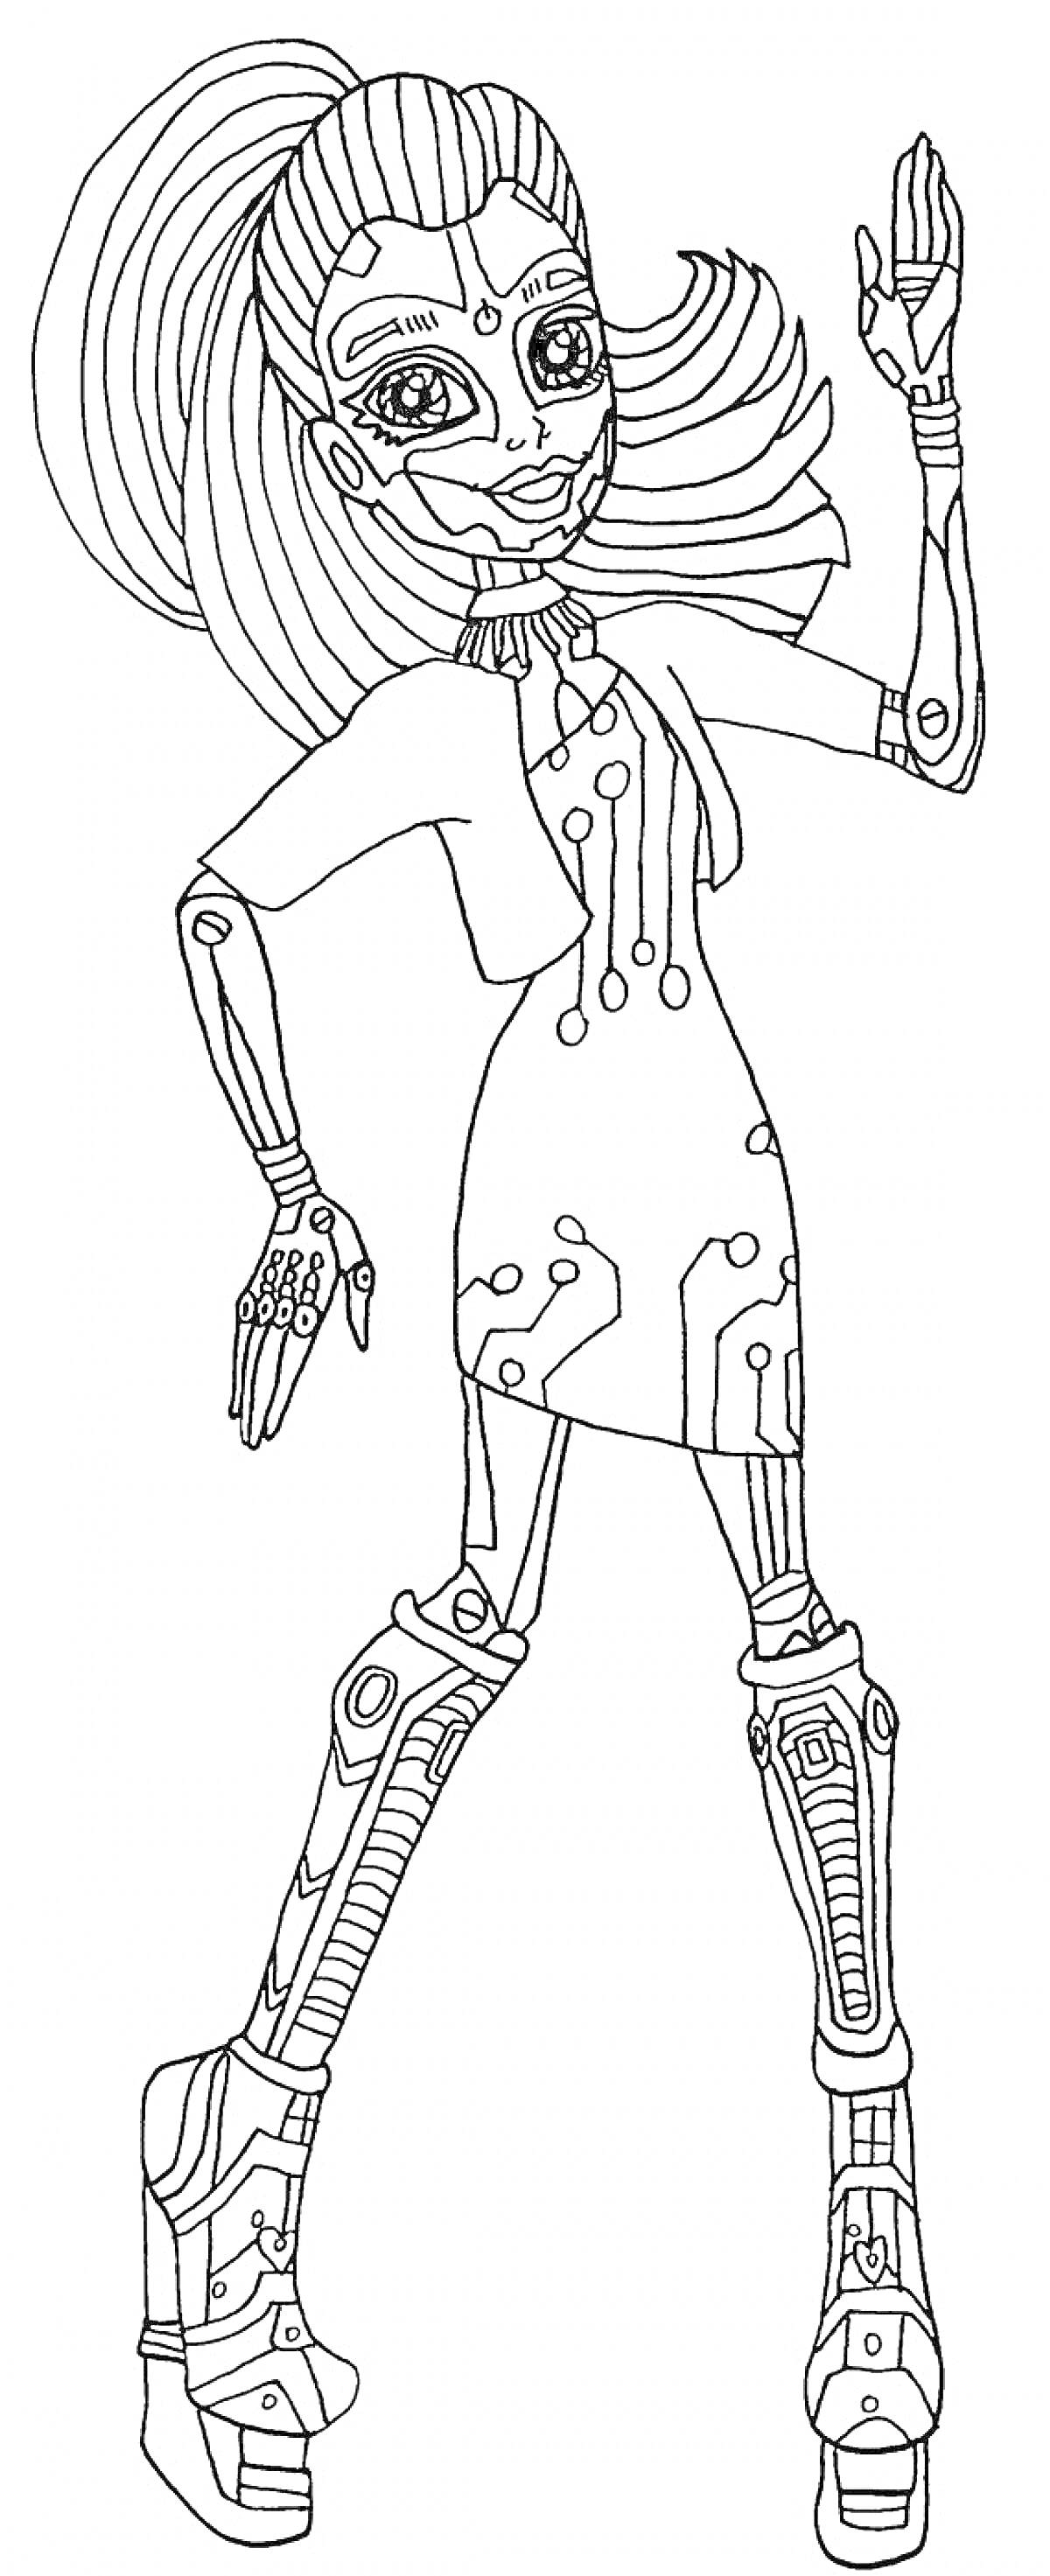 Раскраска Девушка из Монстр Хай в научно-фантастическом наряде с высоким хвостом, в платье с техно-узорами, на платформенных сапогах с технологическими элементами